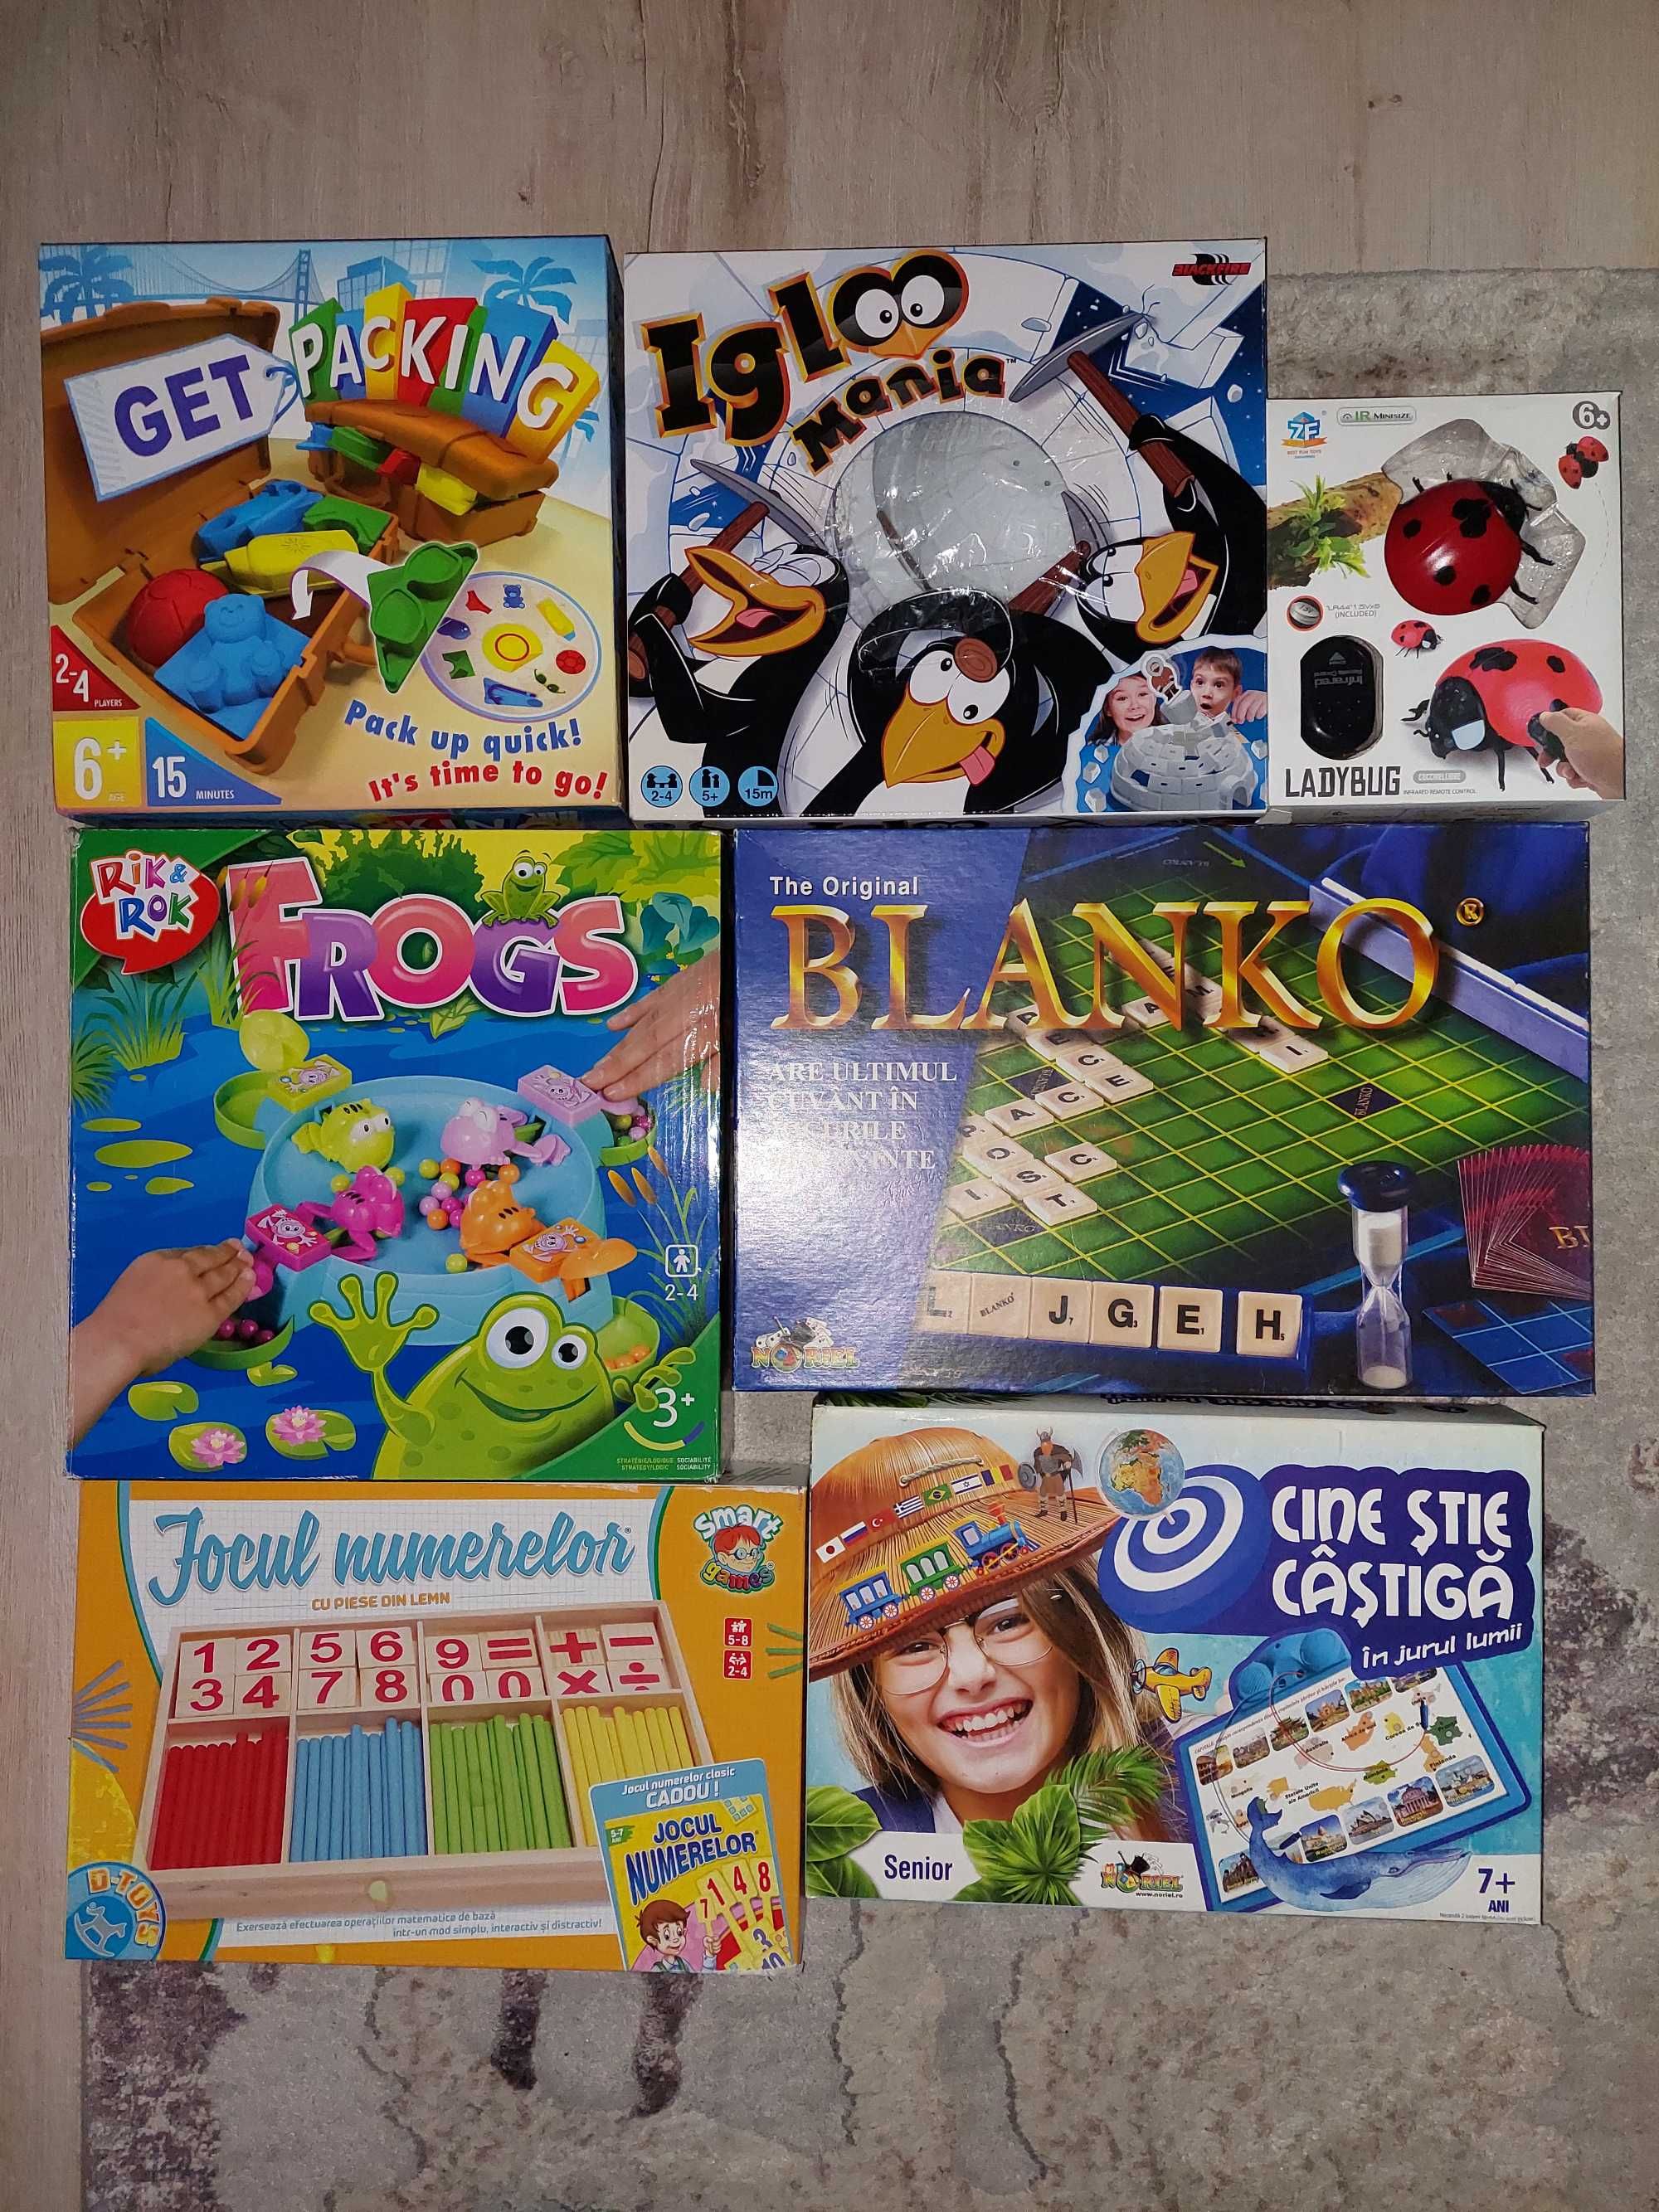 Jocuri educative, Puzzle, Joc de societate